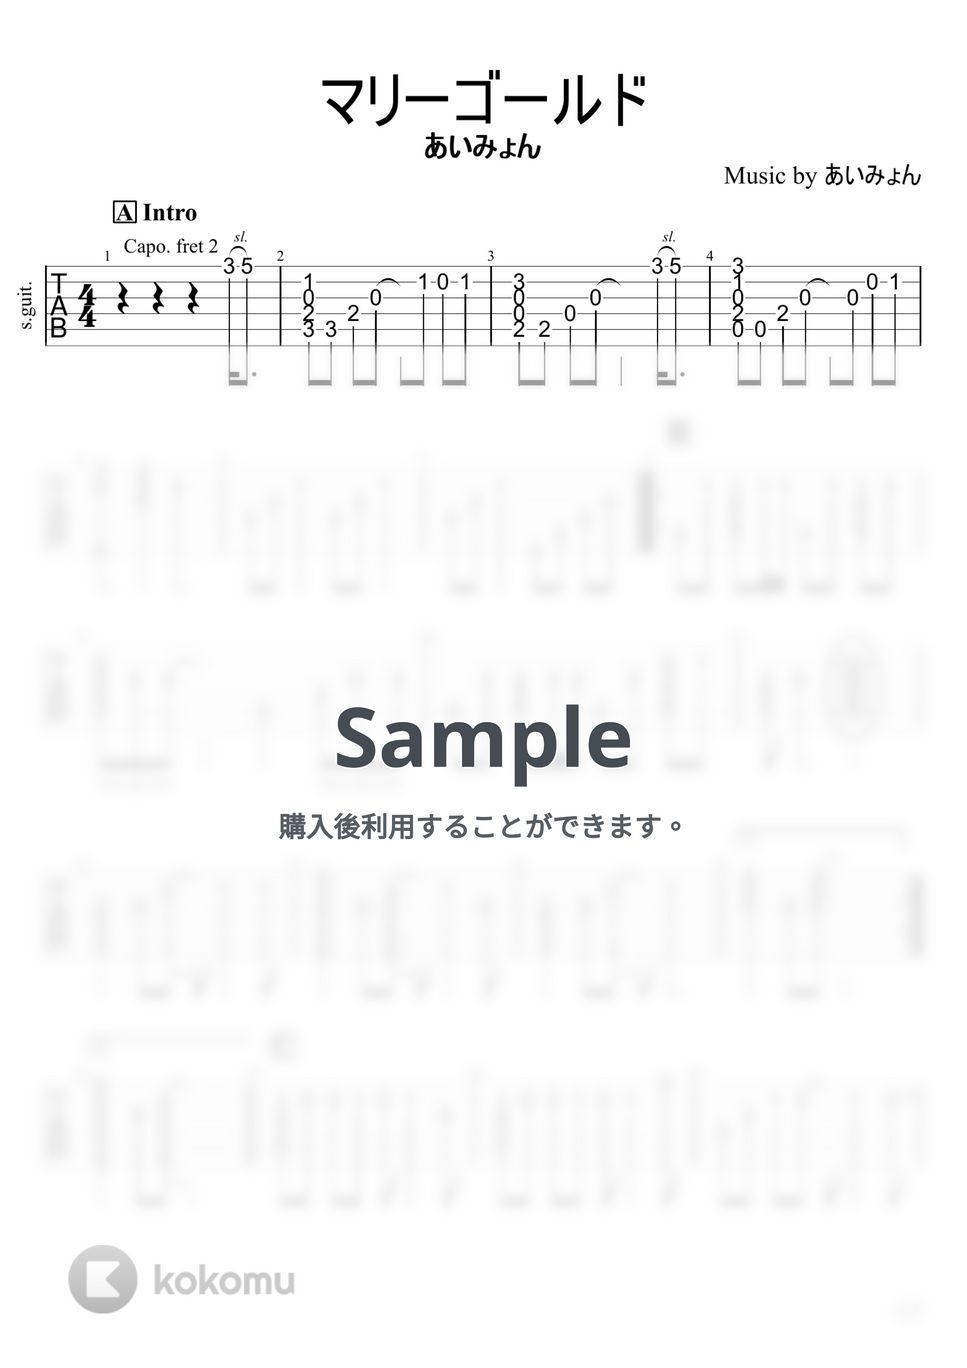 あいみょん - マリーゴールド (ソロギター) by 店長【なんか弾いて屋】